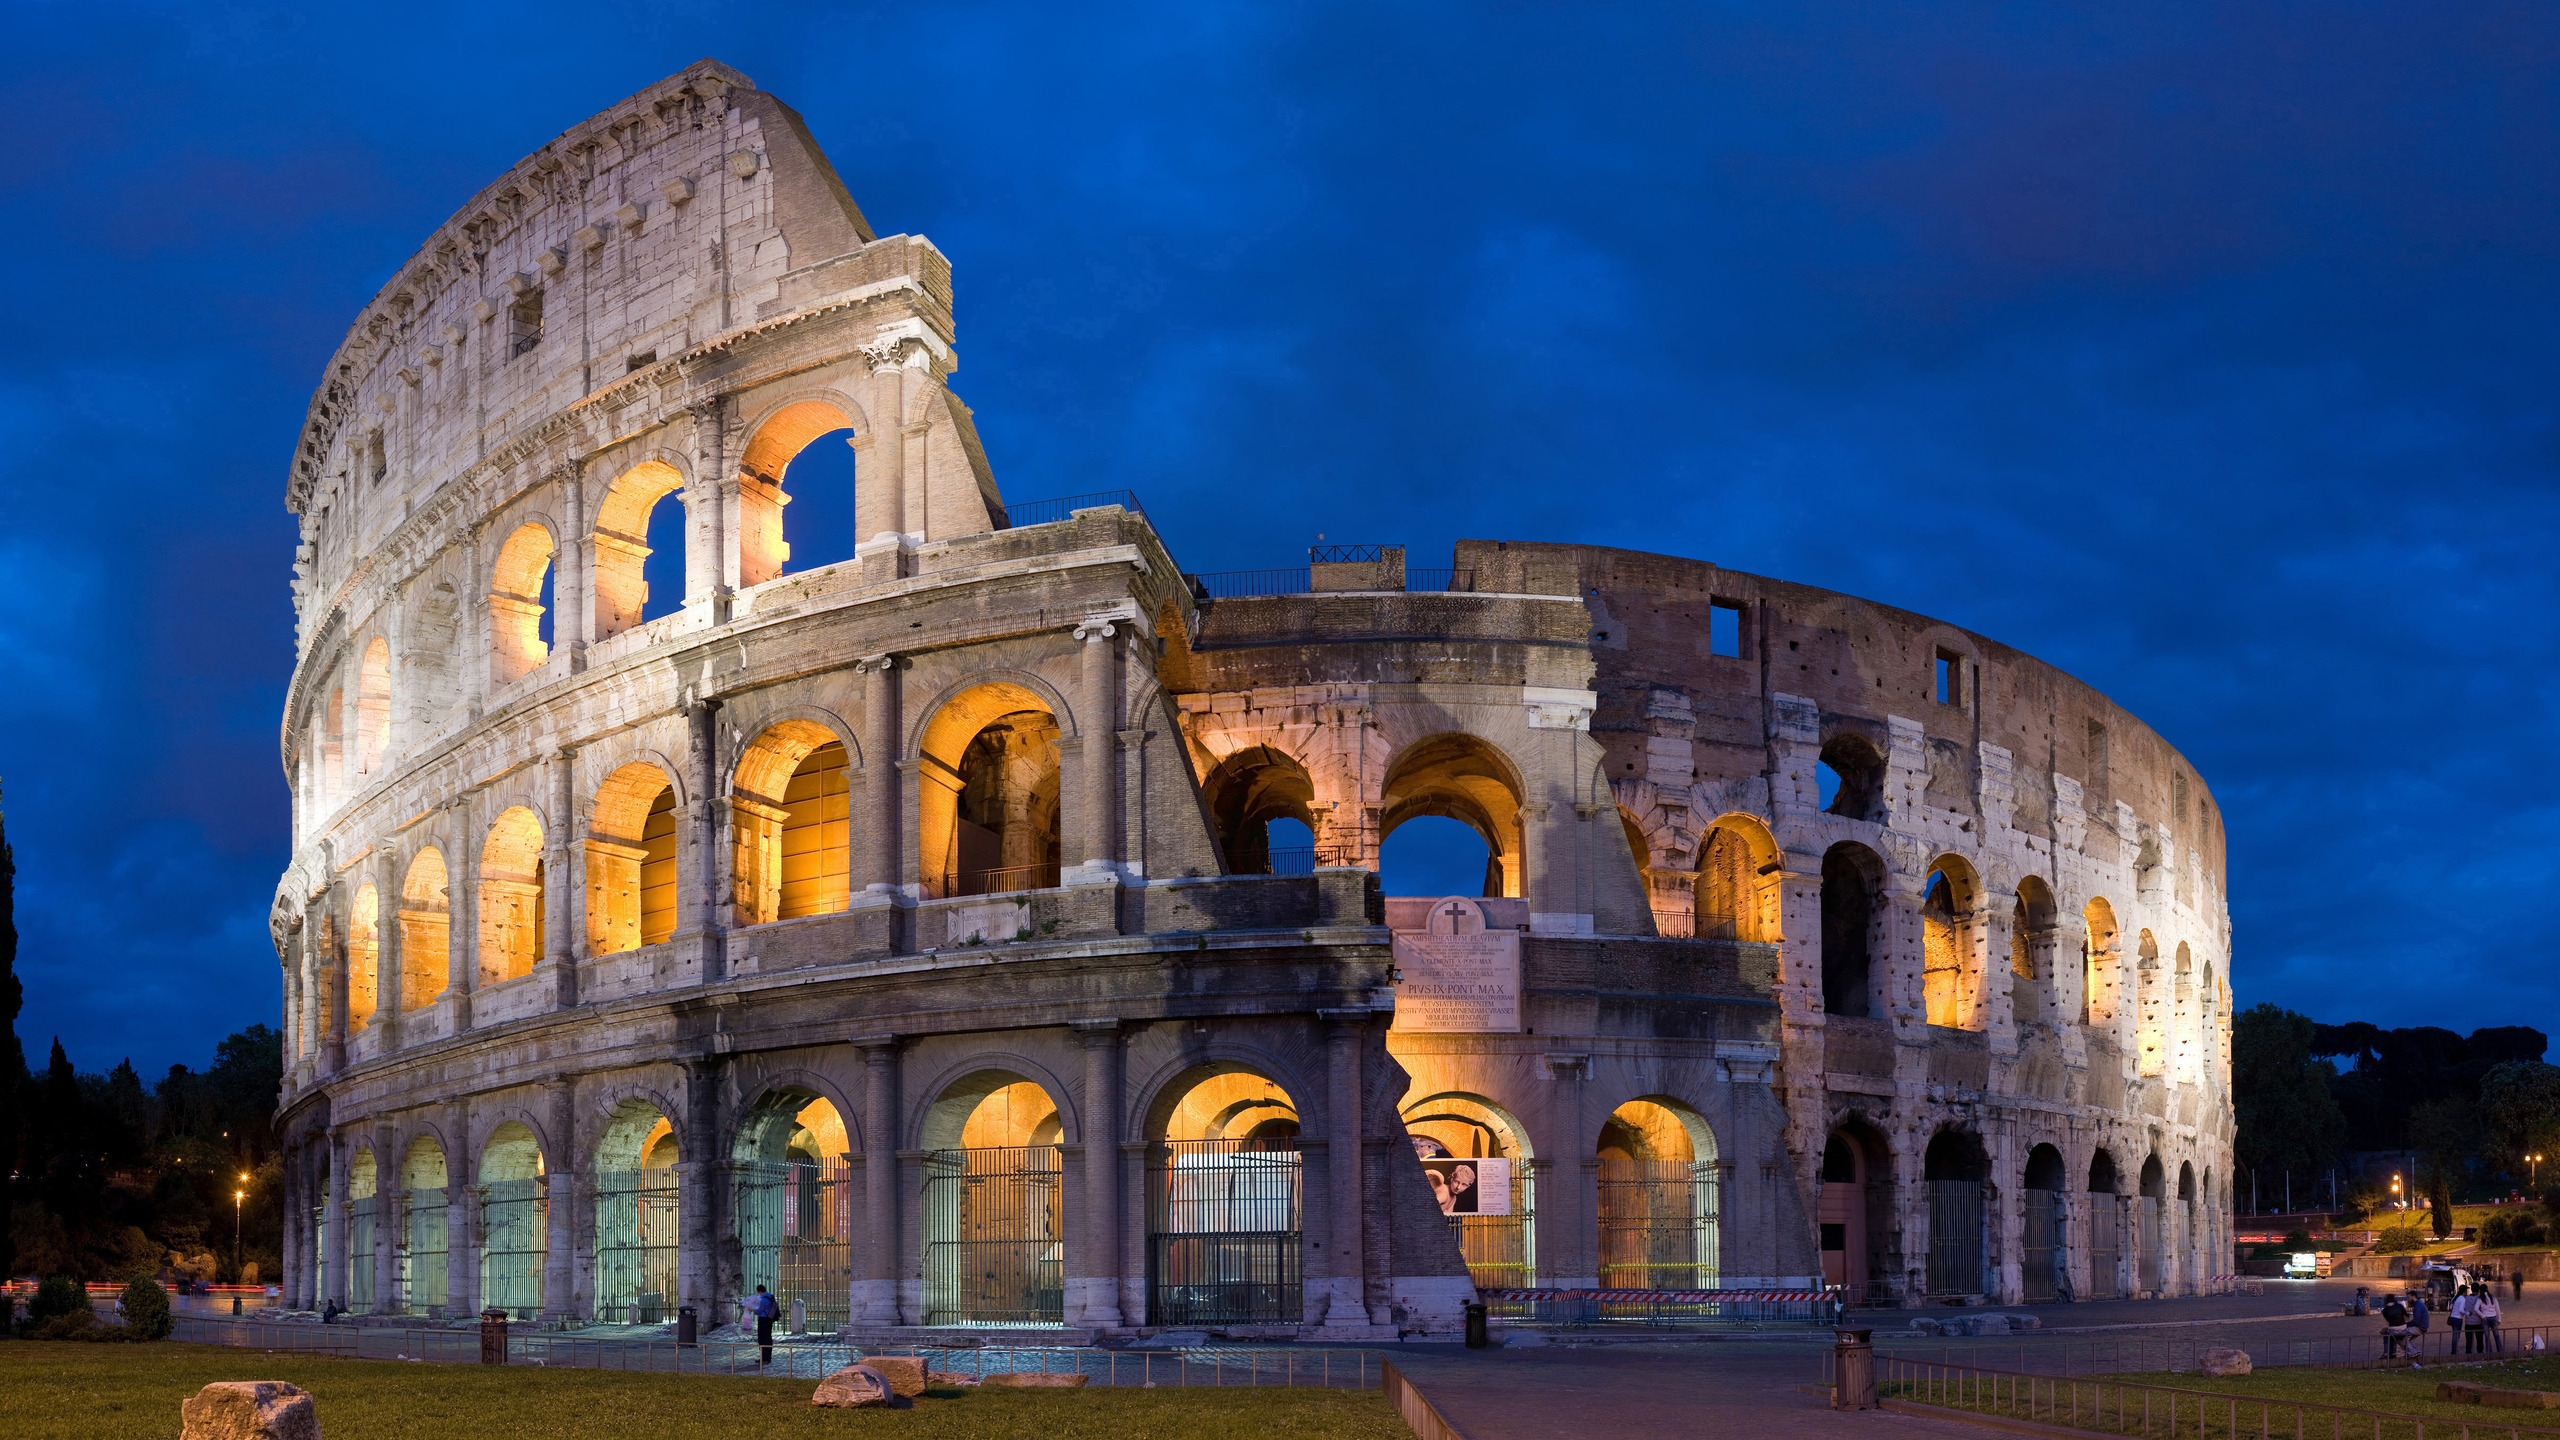 Rome Coliseum for 2560x1440 HDTV resolution